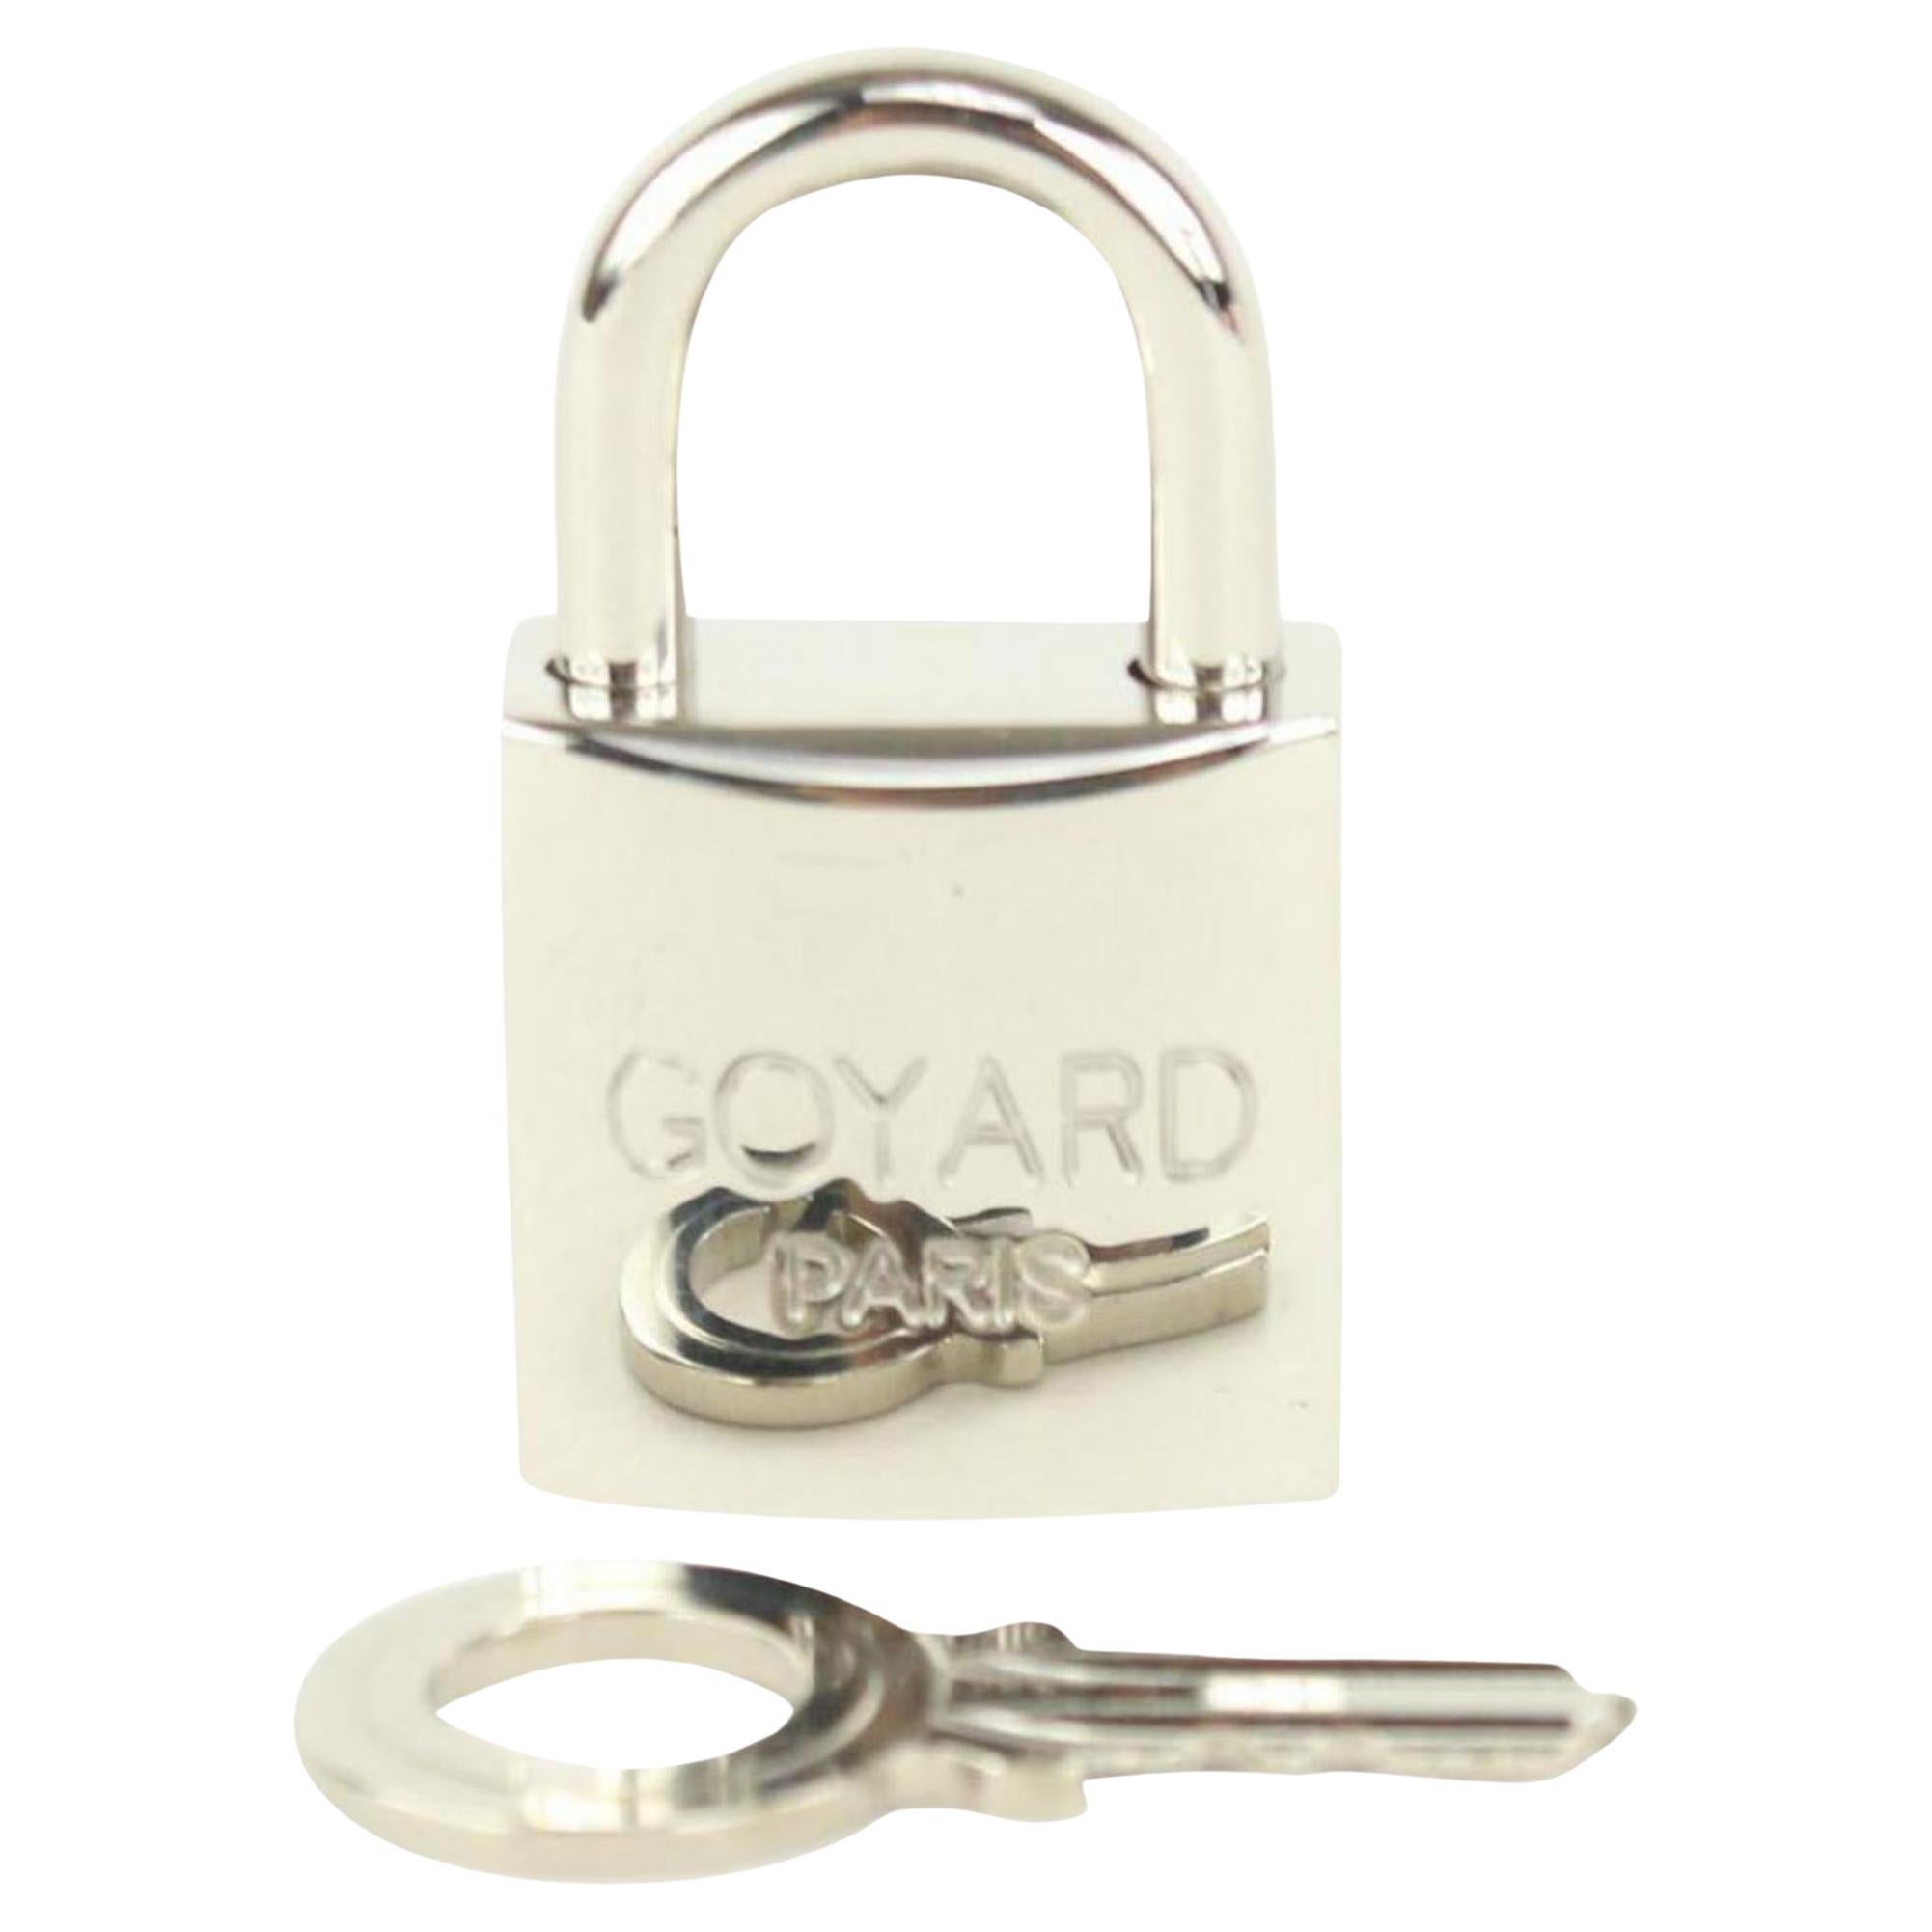 Goyard Silver Lock and Key Set Cadena Bag Charm 1012gy30